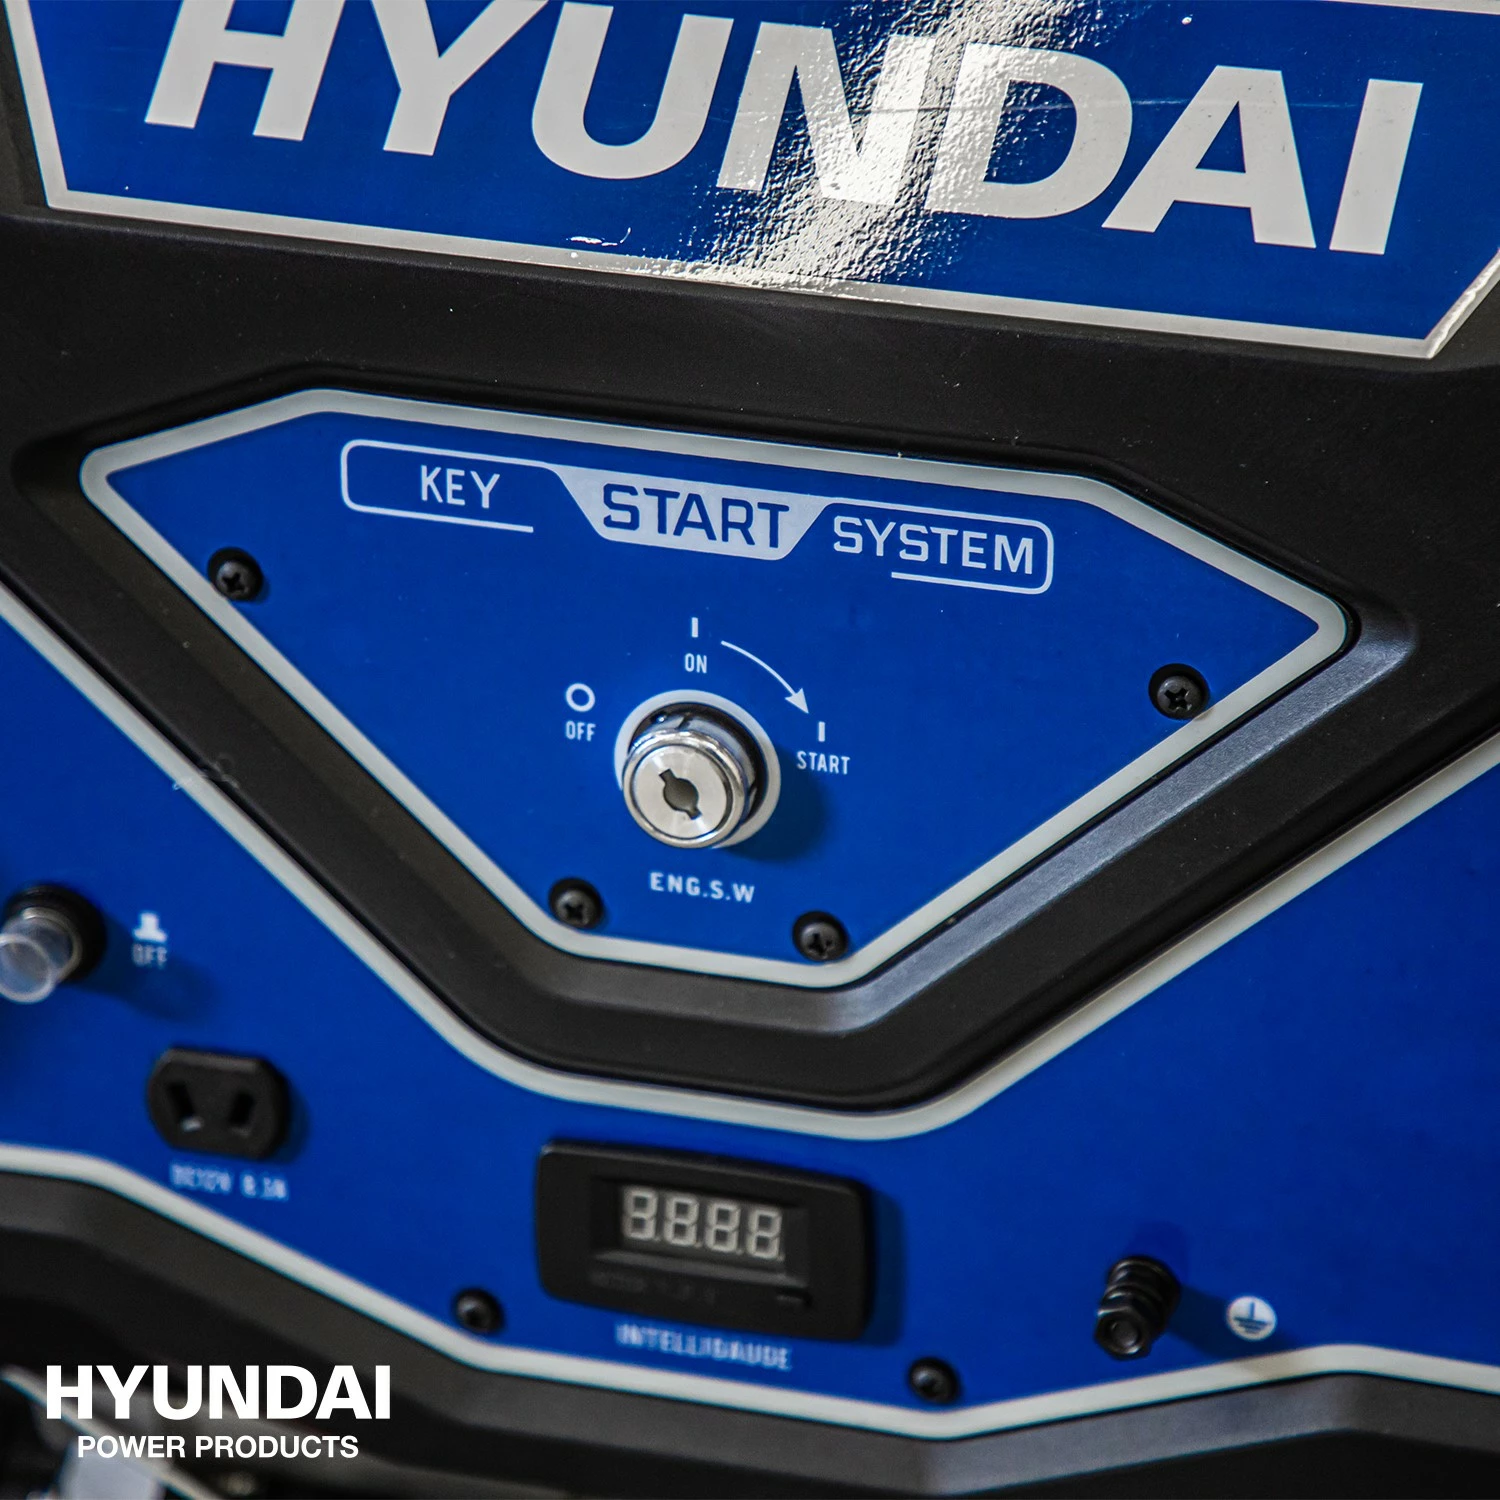 Hyundai 55053 Benzine generator met elektrische start - OHV Motor - 5500W